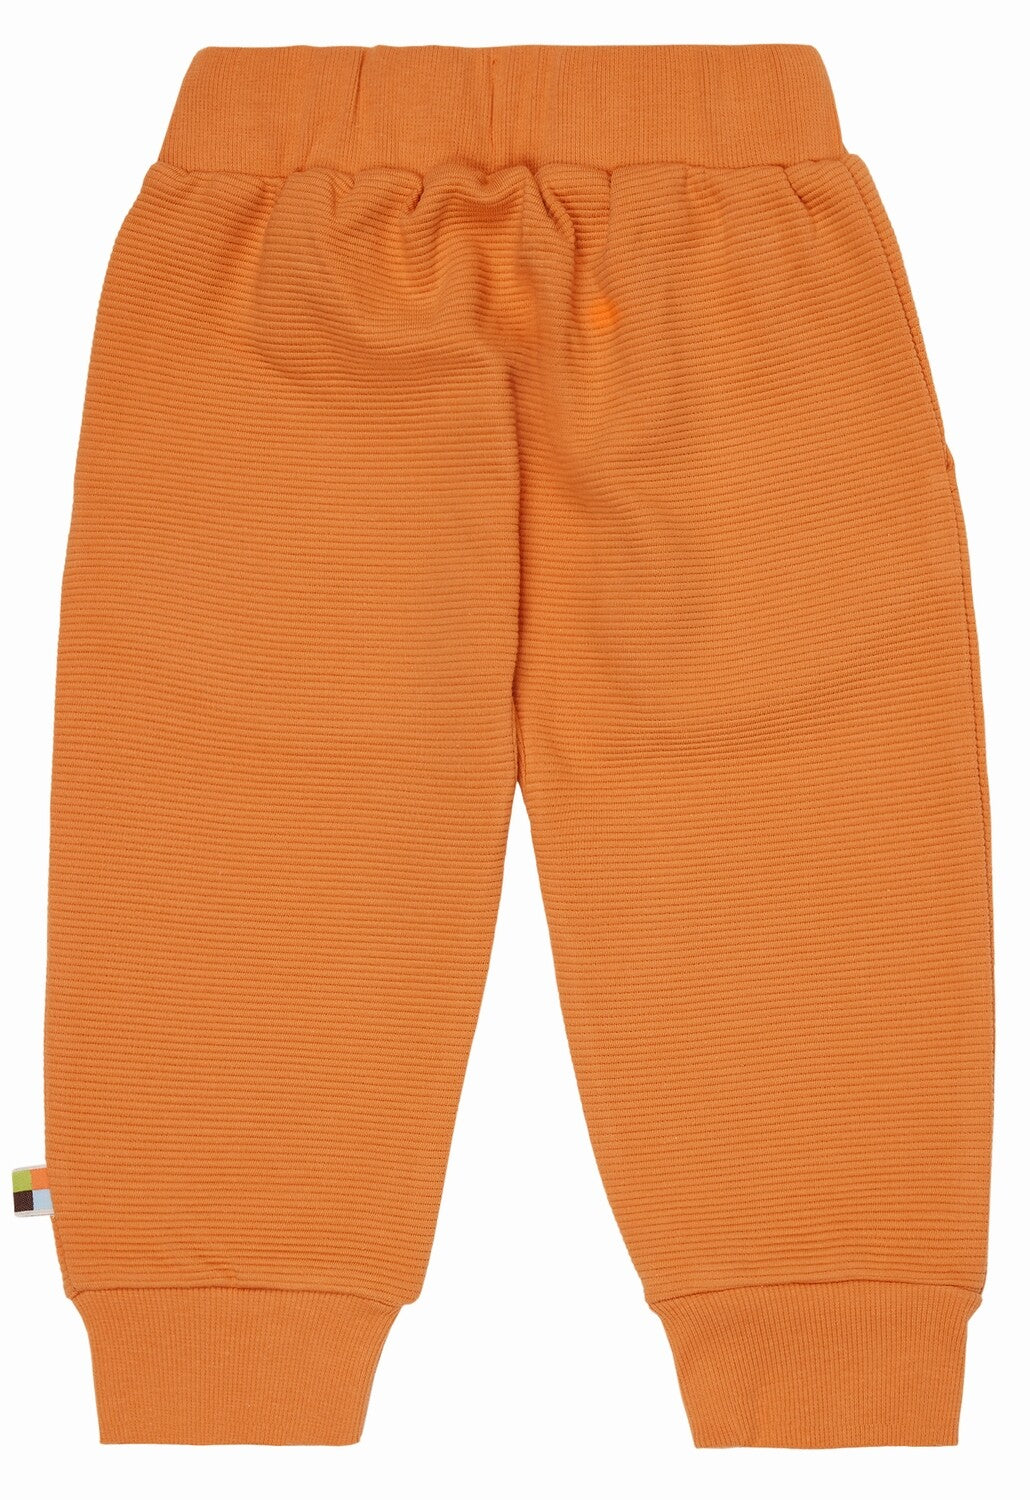 Rantuotos, judesių nevaržančios vaikiškos laisvalaikio kelnės iš švelnaus GOTS organinės medvilnės trikotažo. Orandžinės spalvos, su kišenėmis.